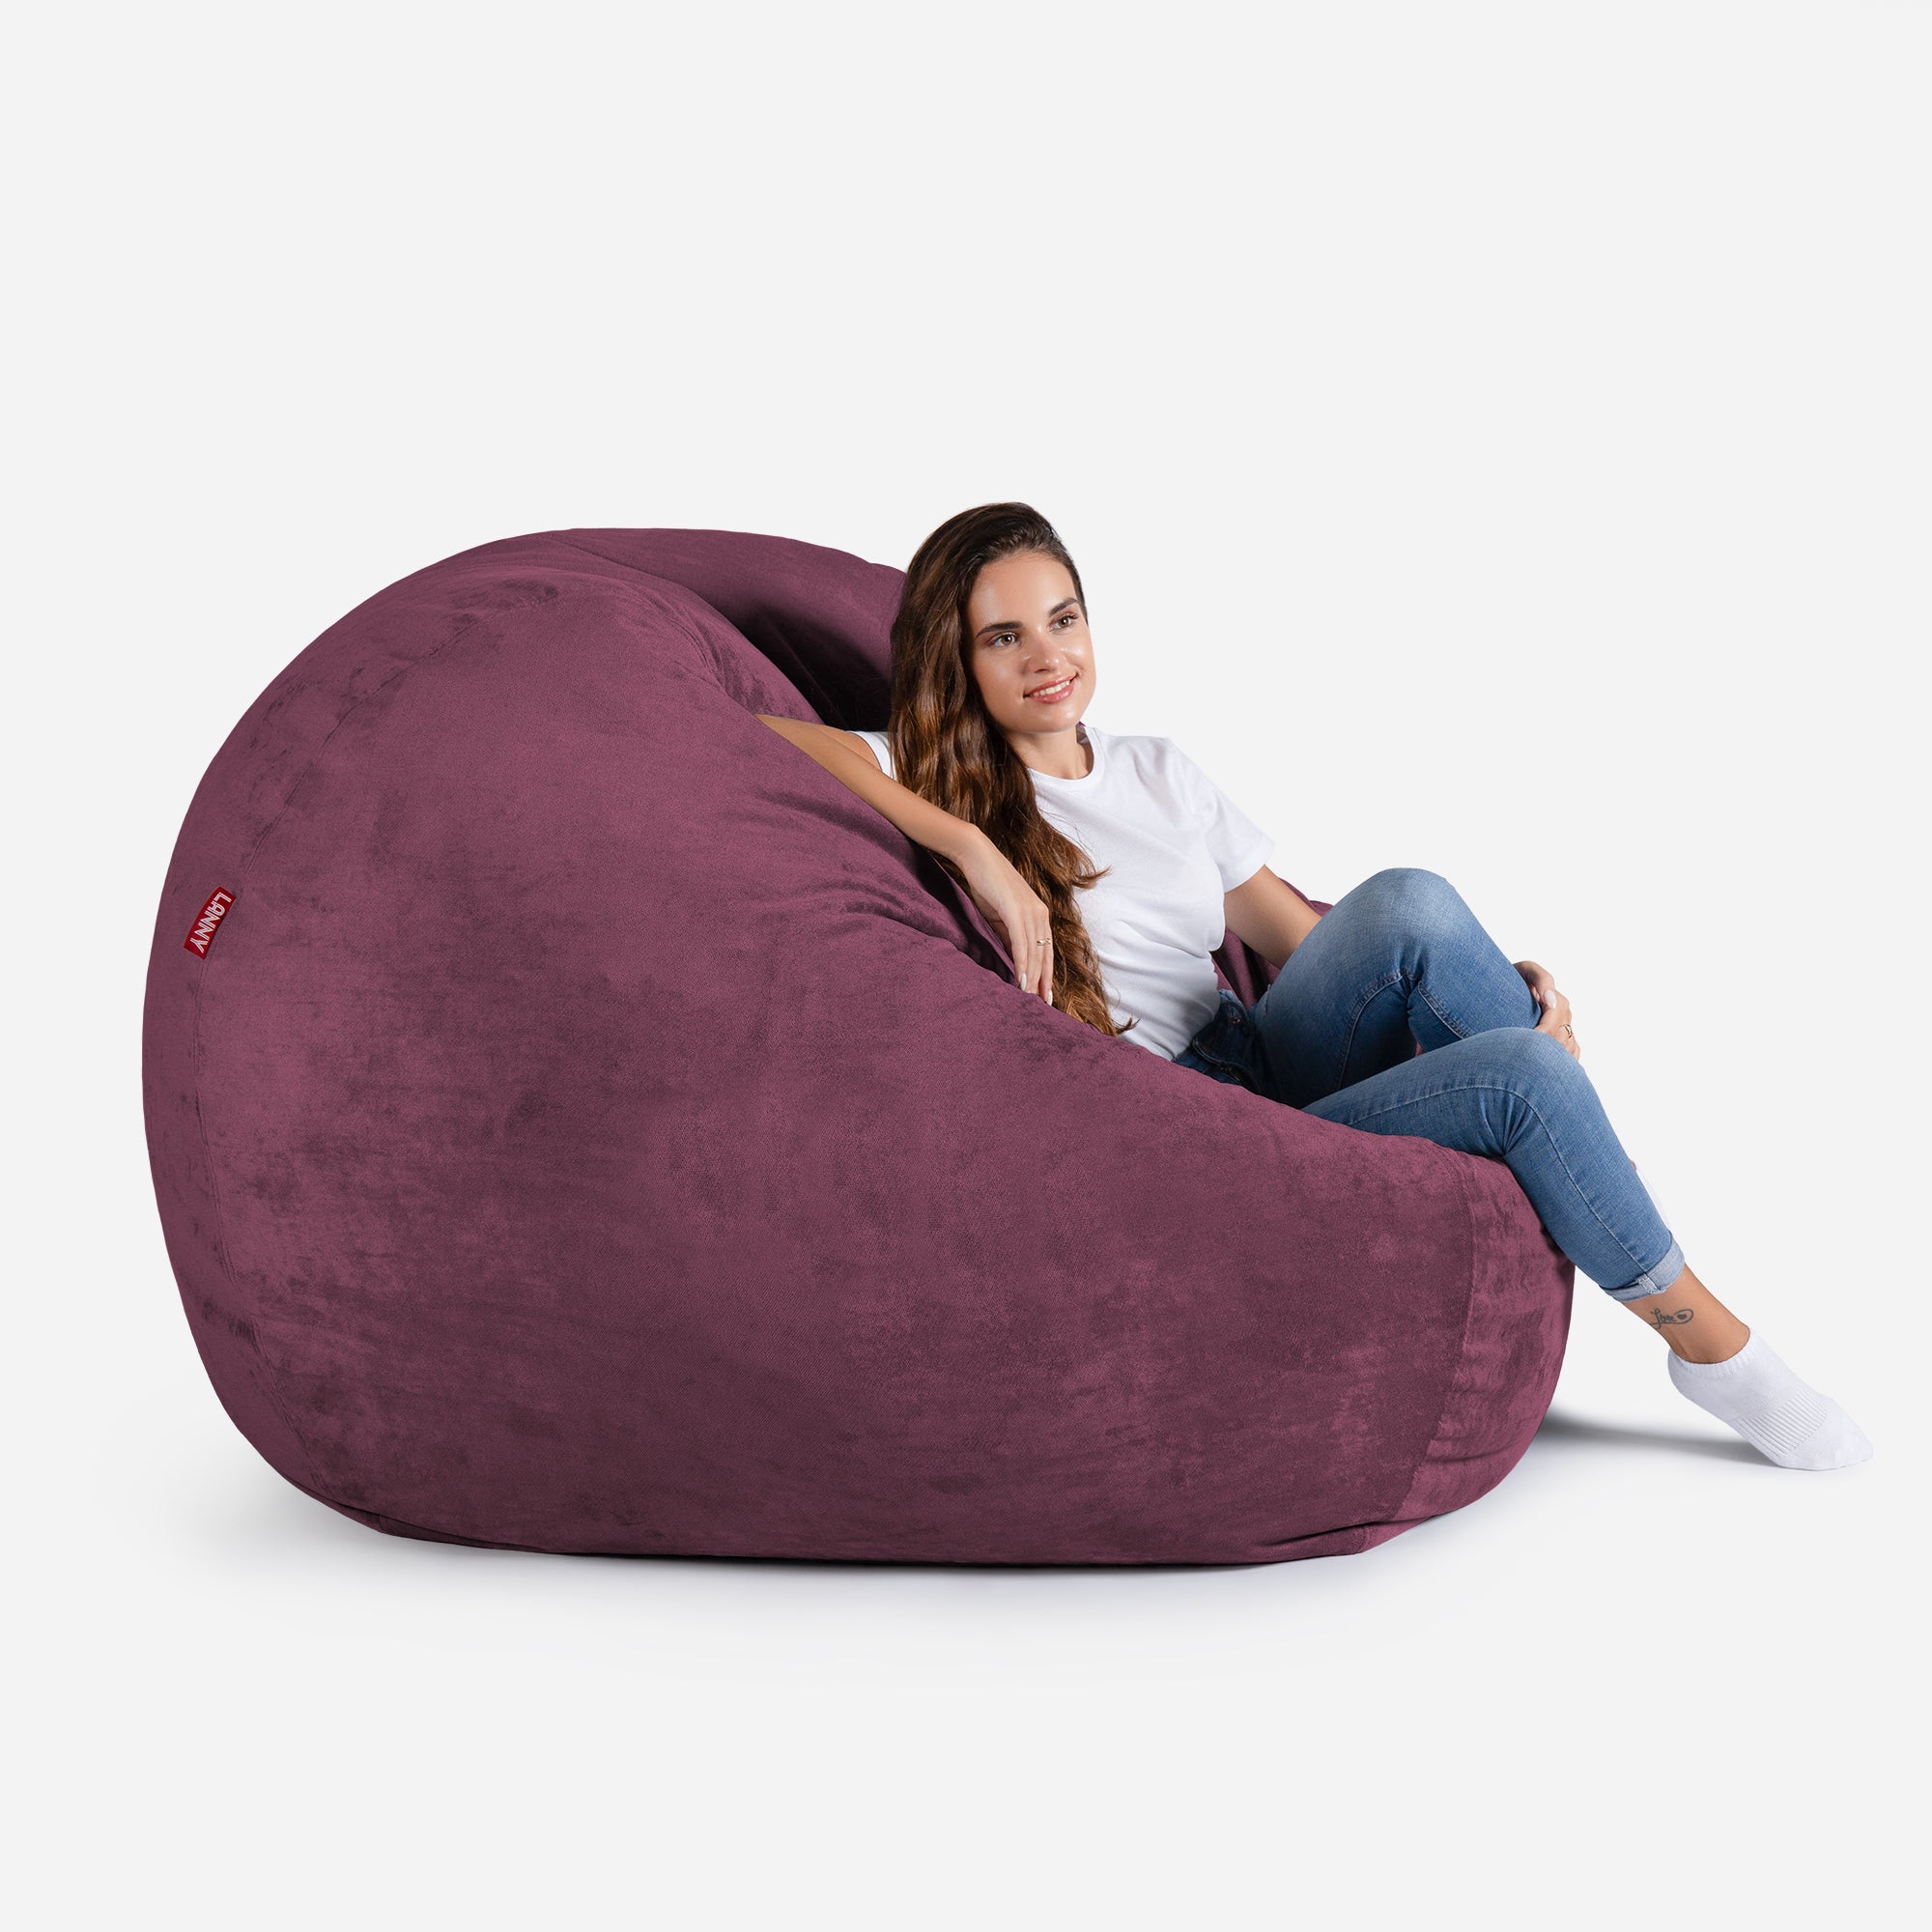 Sphere Aldo Purple Bean bag